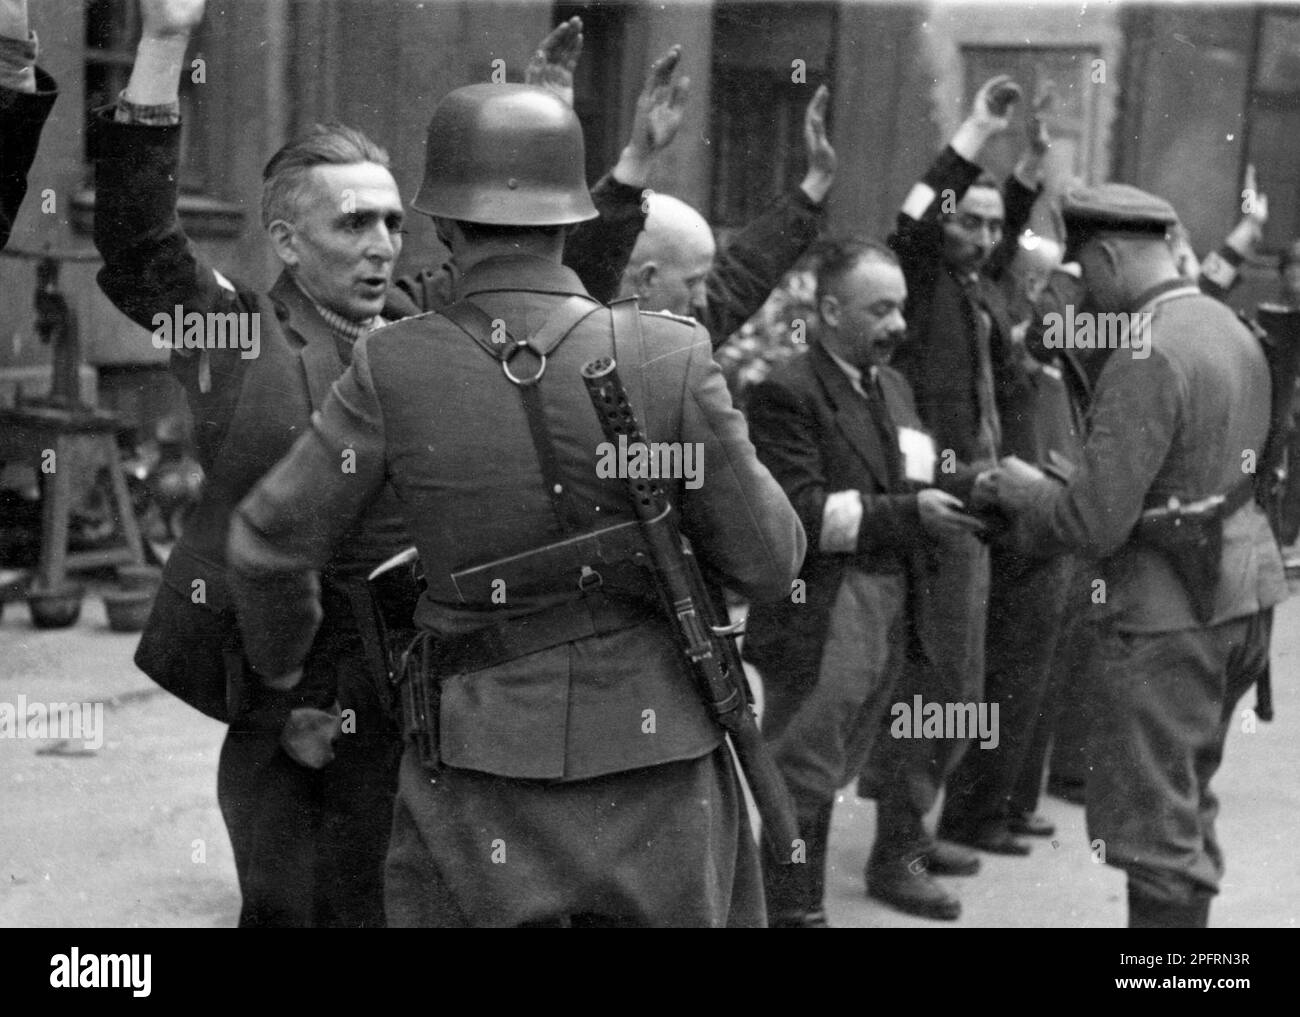 Nel gennaio del 1943 i nazisti arrivarono per arrotondare gli ebrei del ghetto di Varsavia gli ebrei, decisi a combatterlo, presero le SS con armi fatte in casa e primitive. I difensori furono giustiziati o deportati e la zona del Ghetto fu sistematicamente demolita. Questo evento è noto come la rivolta del Ghetto. Questa immagine mostra un esercito delle SS che arrestava i capi del dipartimento ebraico della fabbrica di elmetti Brauer. Il Brauer 'shop', di Herman Brouer, fece caschi per l'esercito tedesco e impiegò 2 mila persone. I loro operai erano probabilmente degli ultimi ebrei ad essere deportati dal ghetto. Questa immagine proviene dalla G Foto Stock